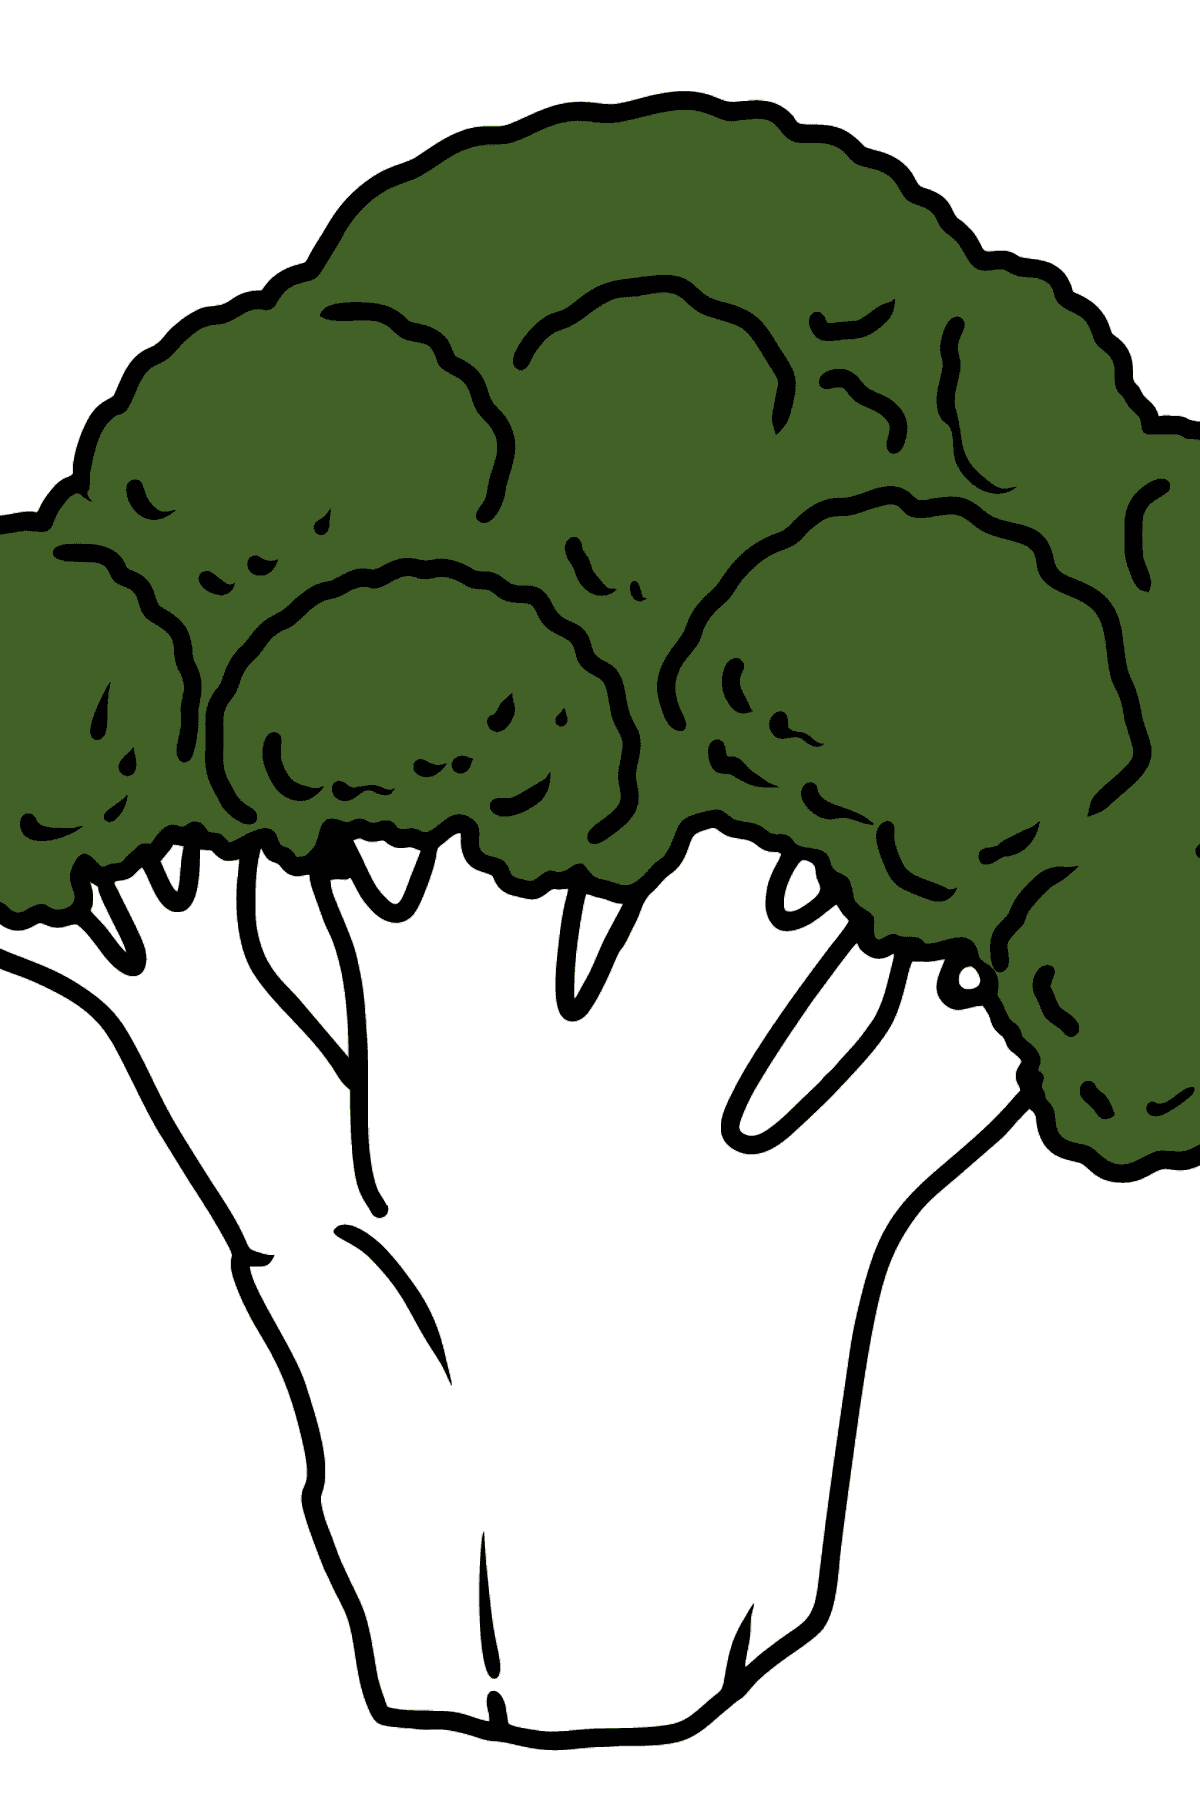 Målarbild broccoli - Målarbilder För barn